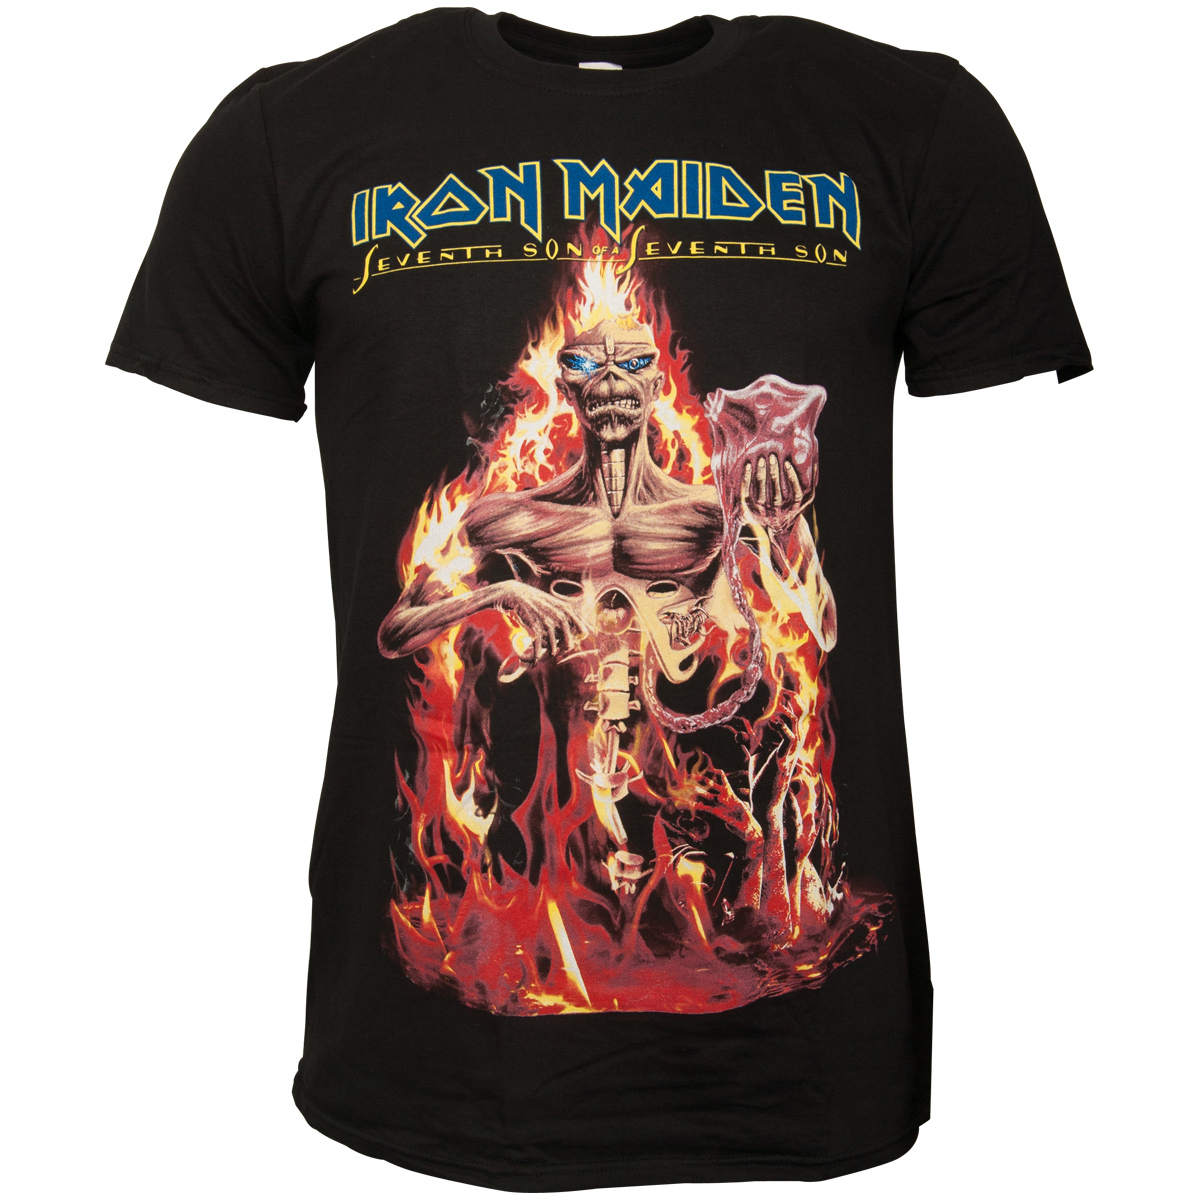 Iron Maiden - T-Shirt Seventh Son - schwarz